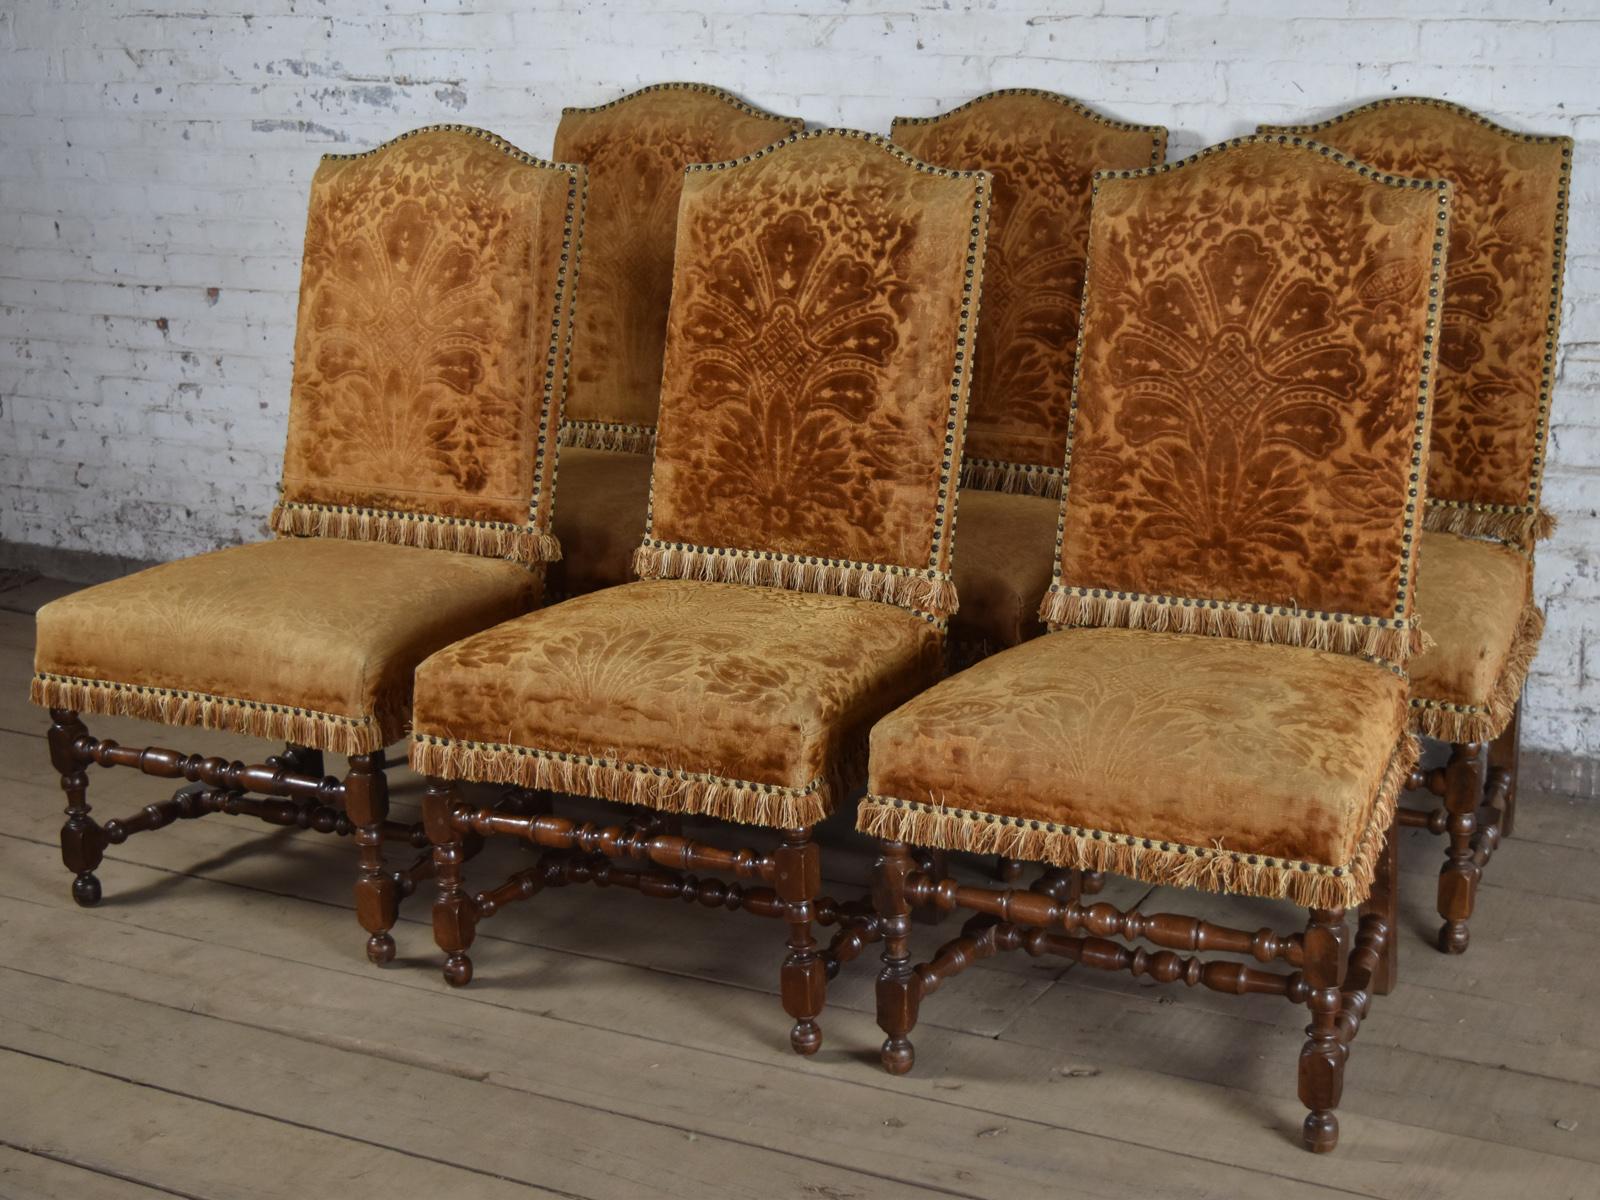 Ensemble arlequin de 12 chaises d'appoint en noyer et tapisserie de style Louis XIII, 17e siècle, de belle qualité, aux proportions généreuses et à la construction solidement chevillée. Les douze chaises ont des dossiers arrondis, des pieds avant